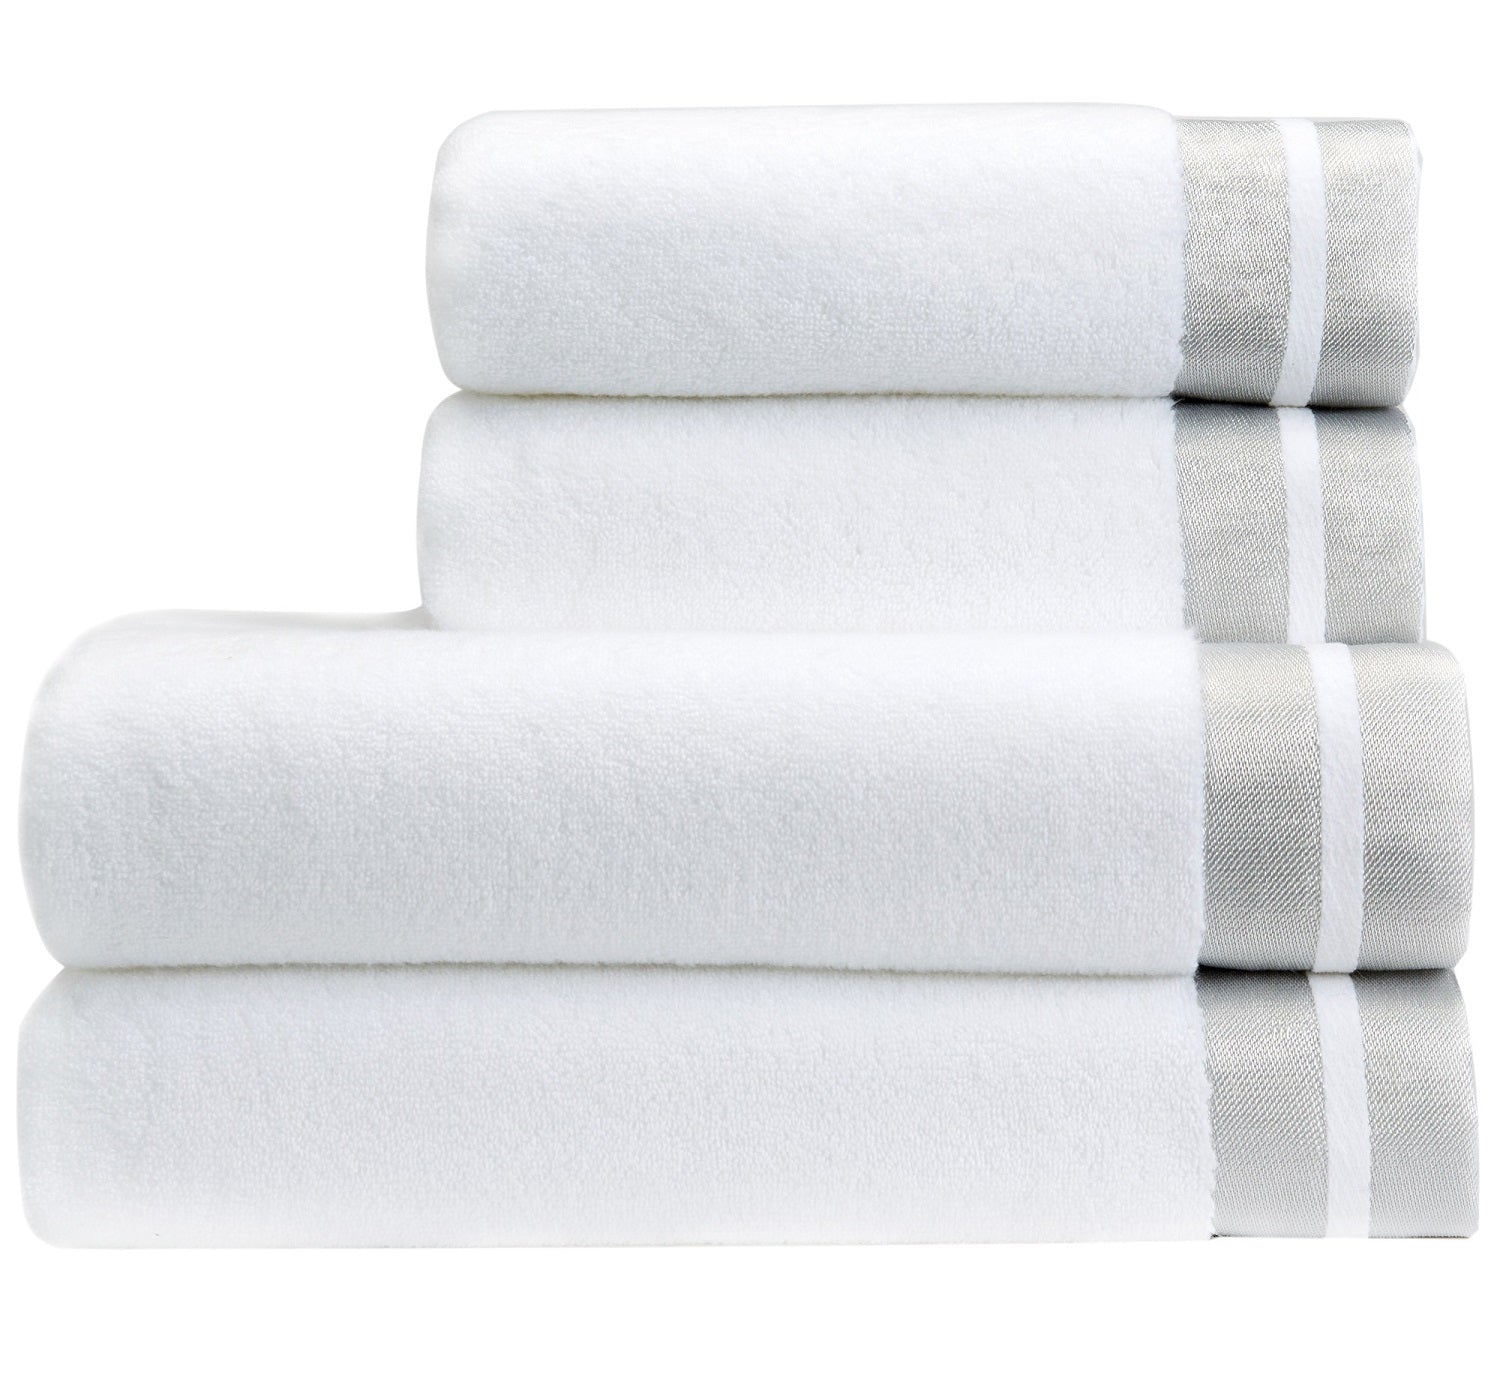 Christy Bath Towel Designer Mode Silver End Hem Soft